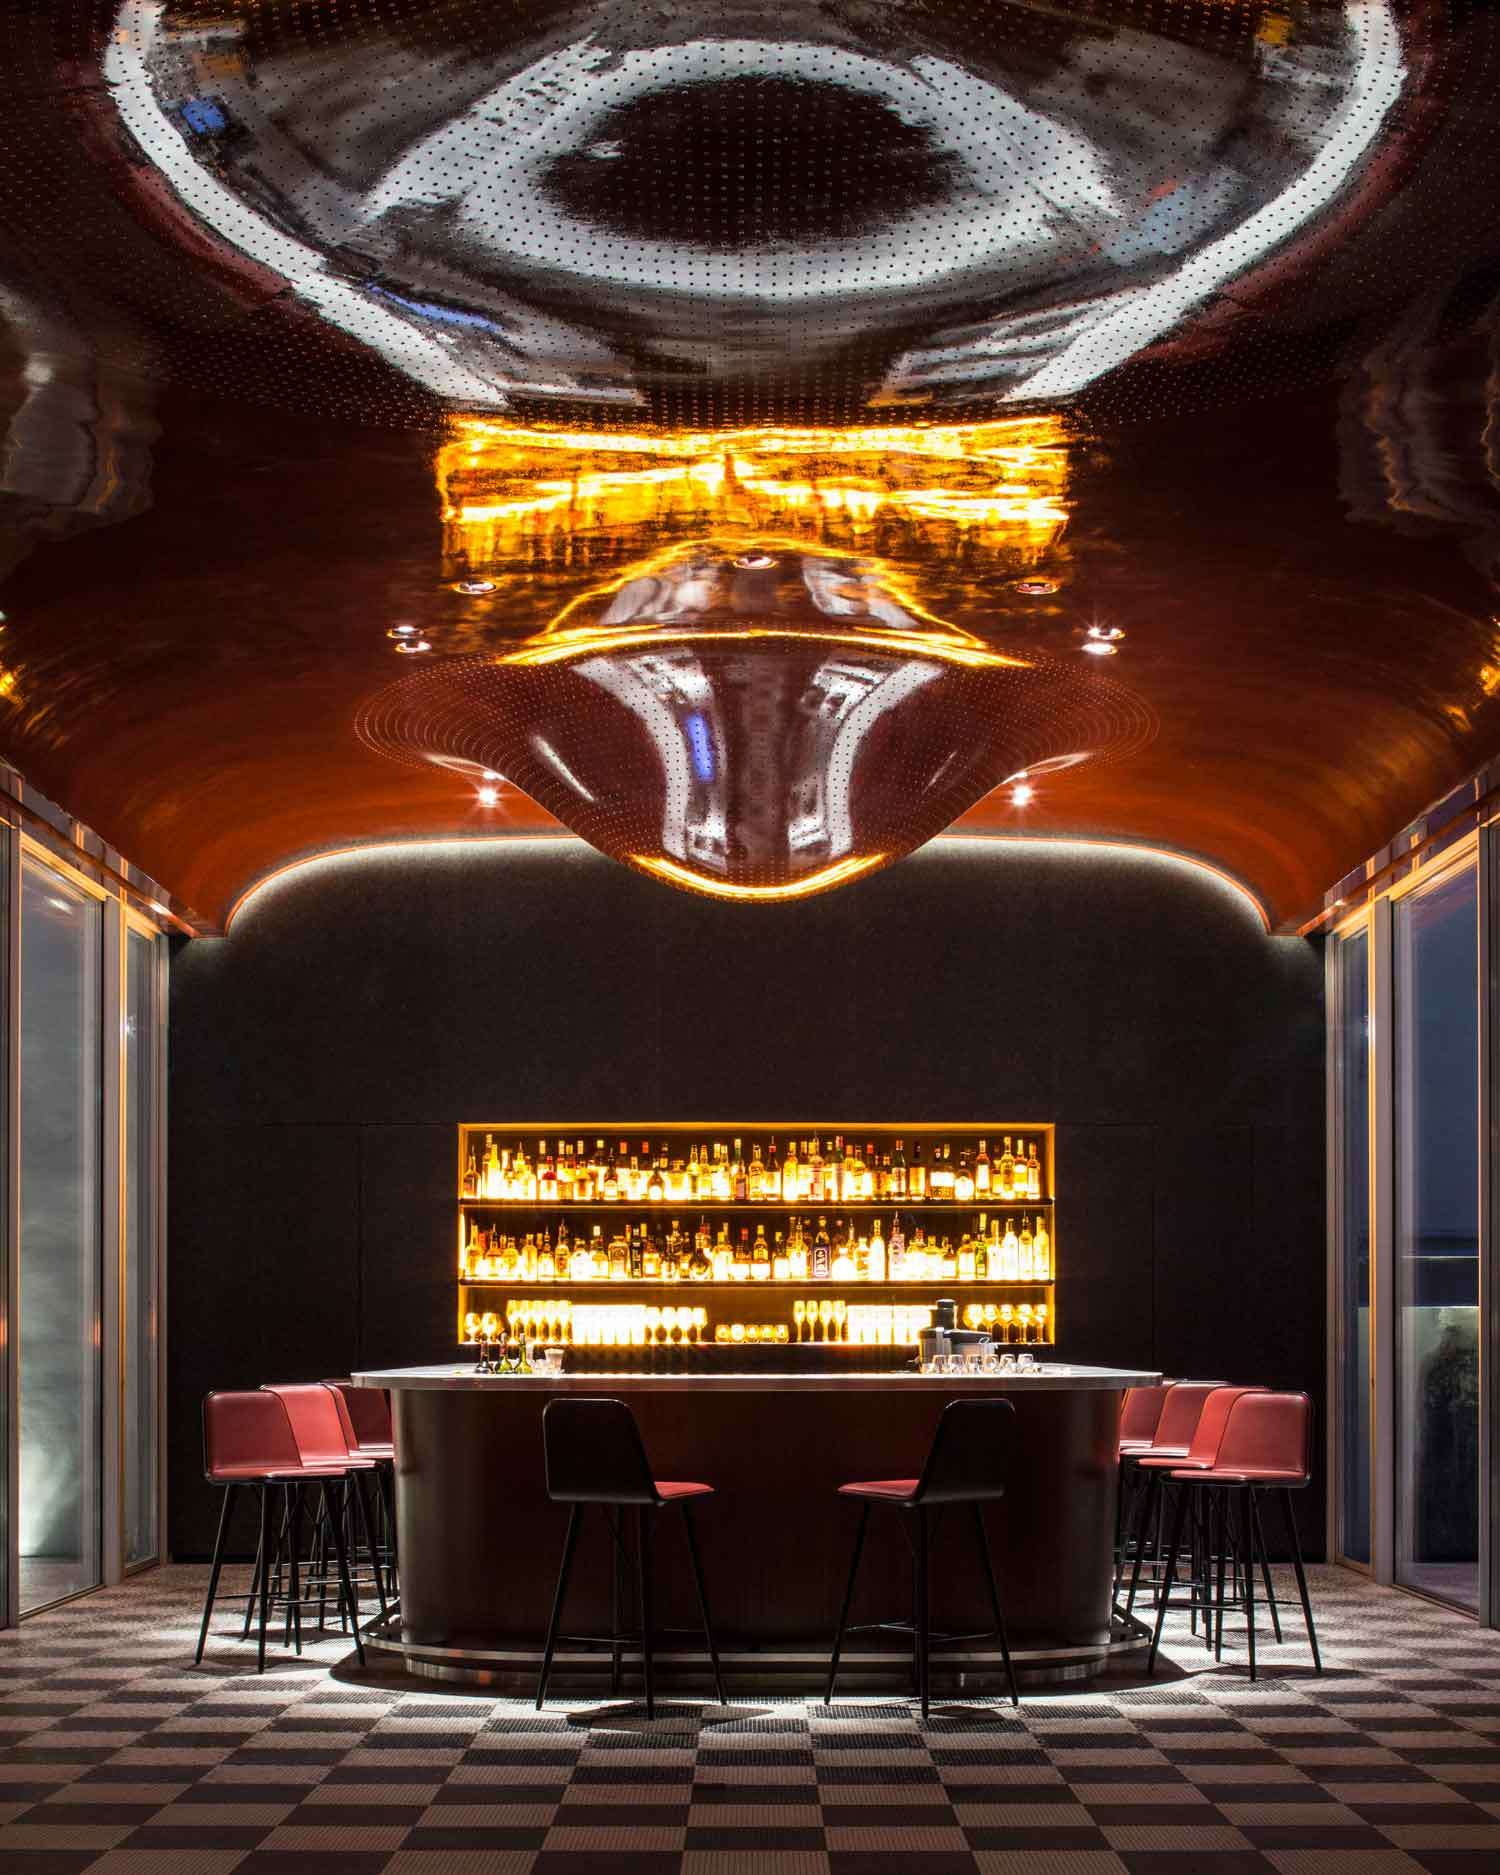 Legendary Nightclub Les Bains Paris Becomes A Luxury Hotel dedans Les Bains Douches Paris Club